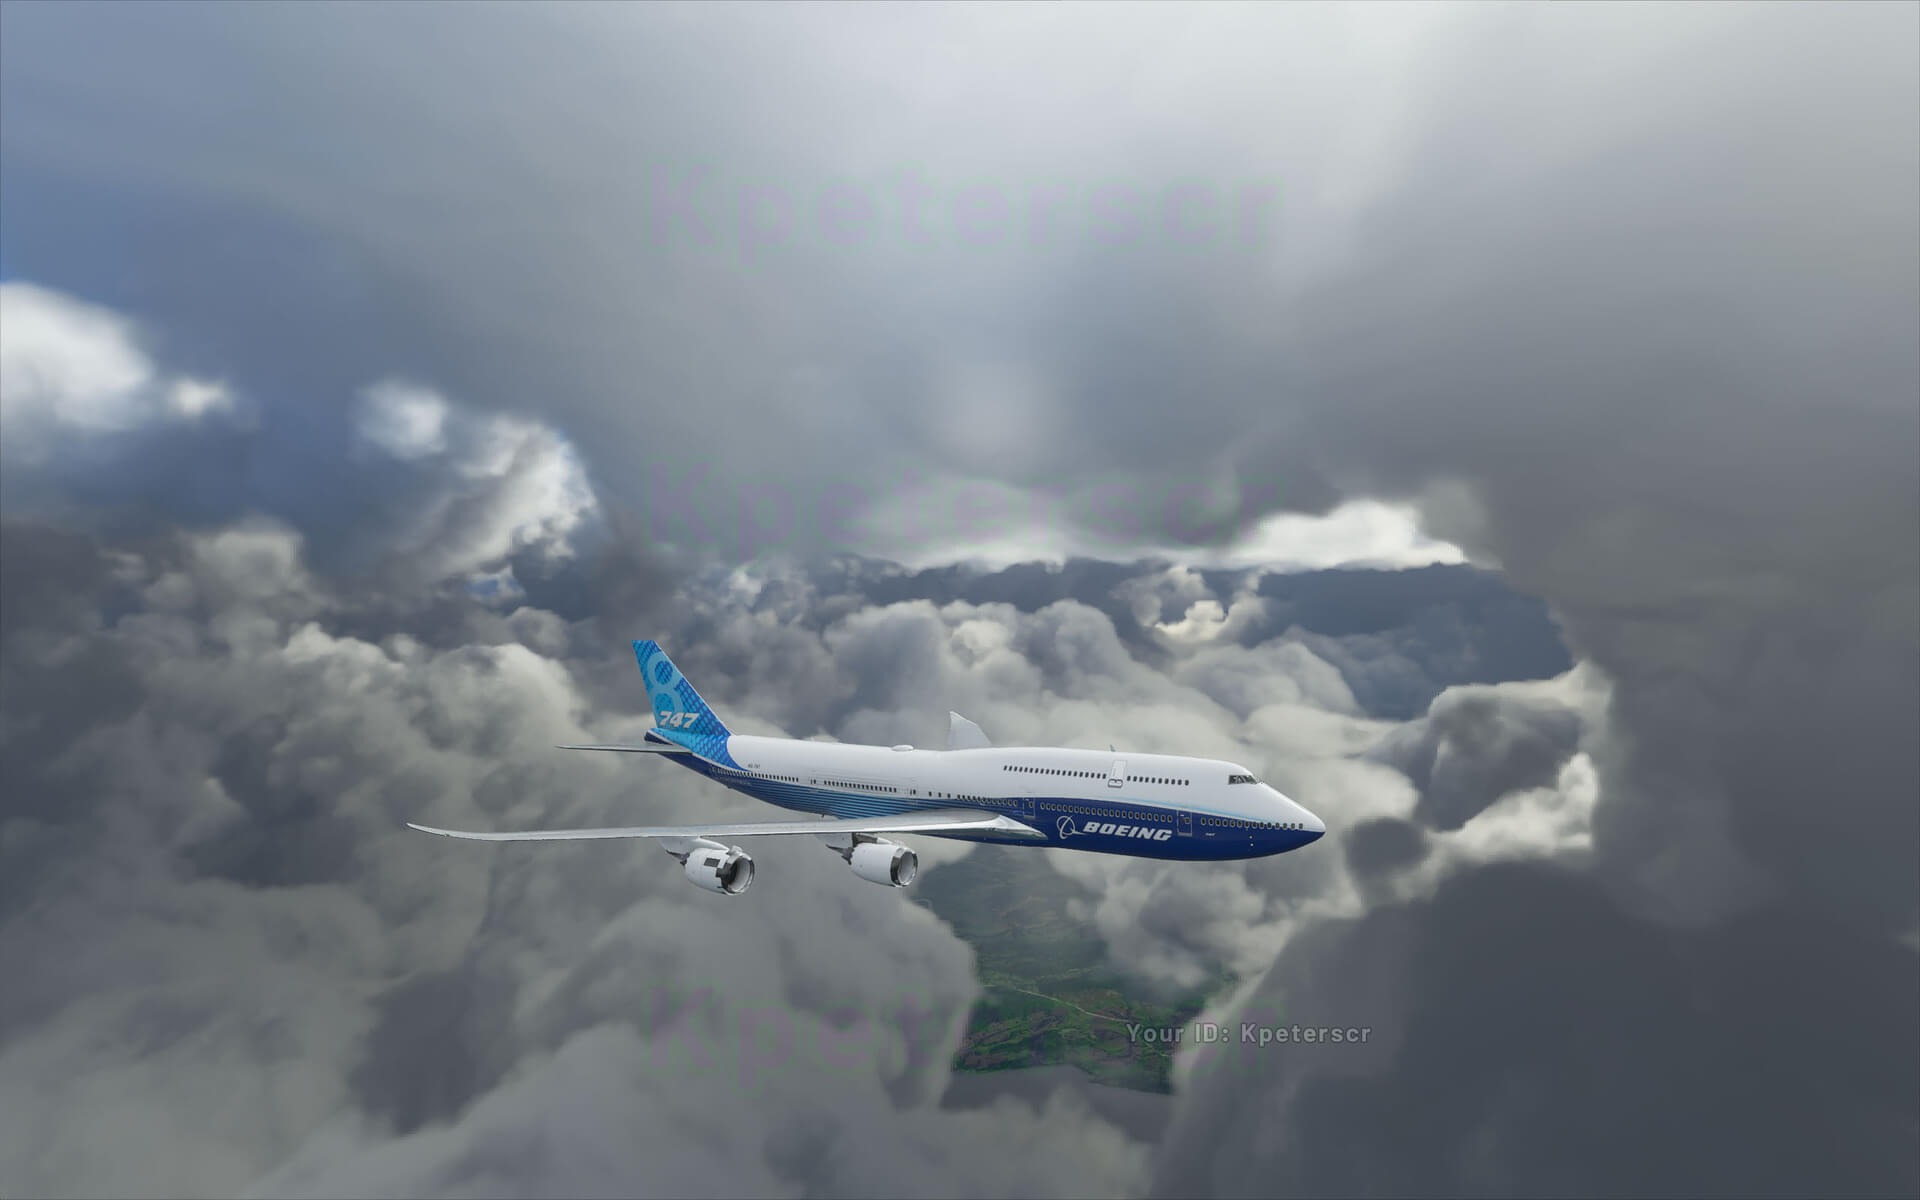 《微软飞行模拟》新截图公布 展示积云和夜晚效果